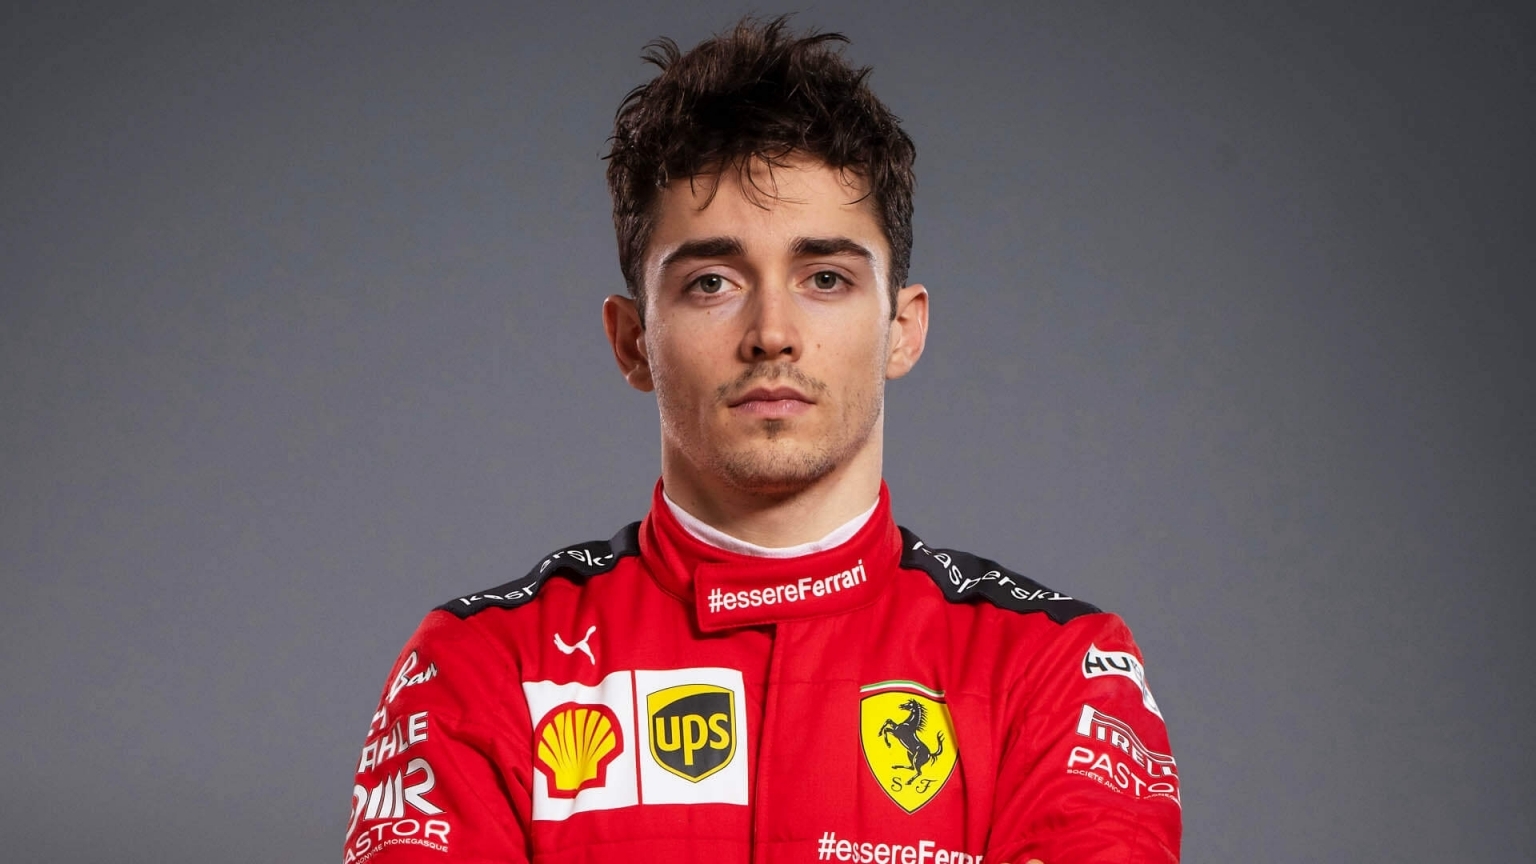 El piloto de Ferrari Charles Leclerc da positivo a COVID-19